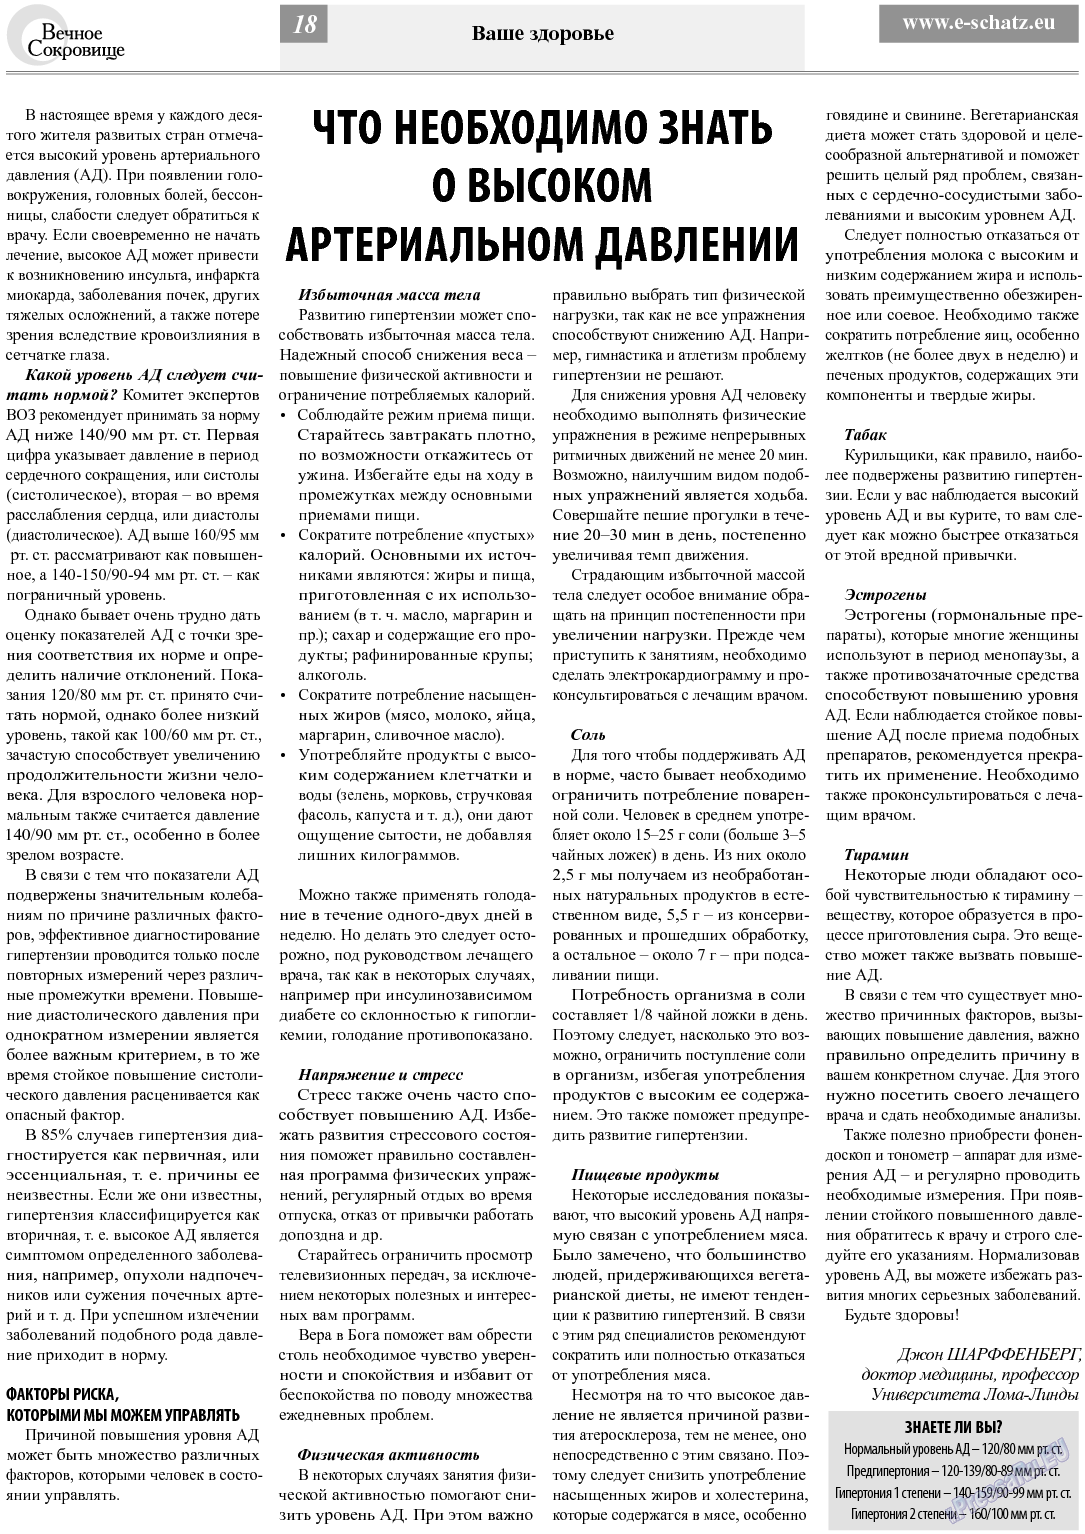 Вечное сокровище, газета. 2013 №5 стр.18